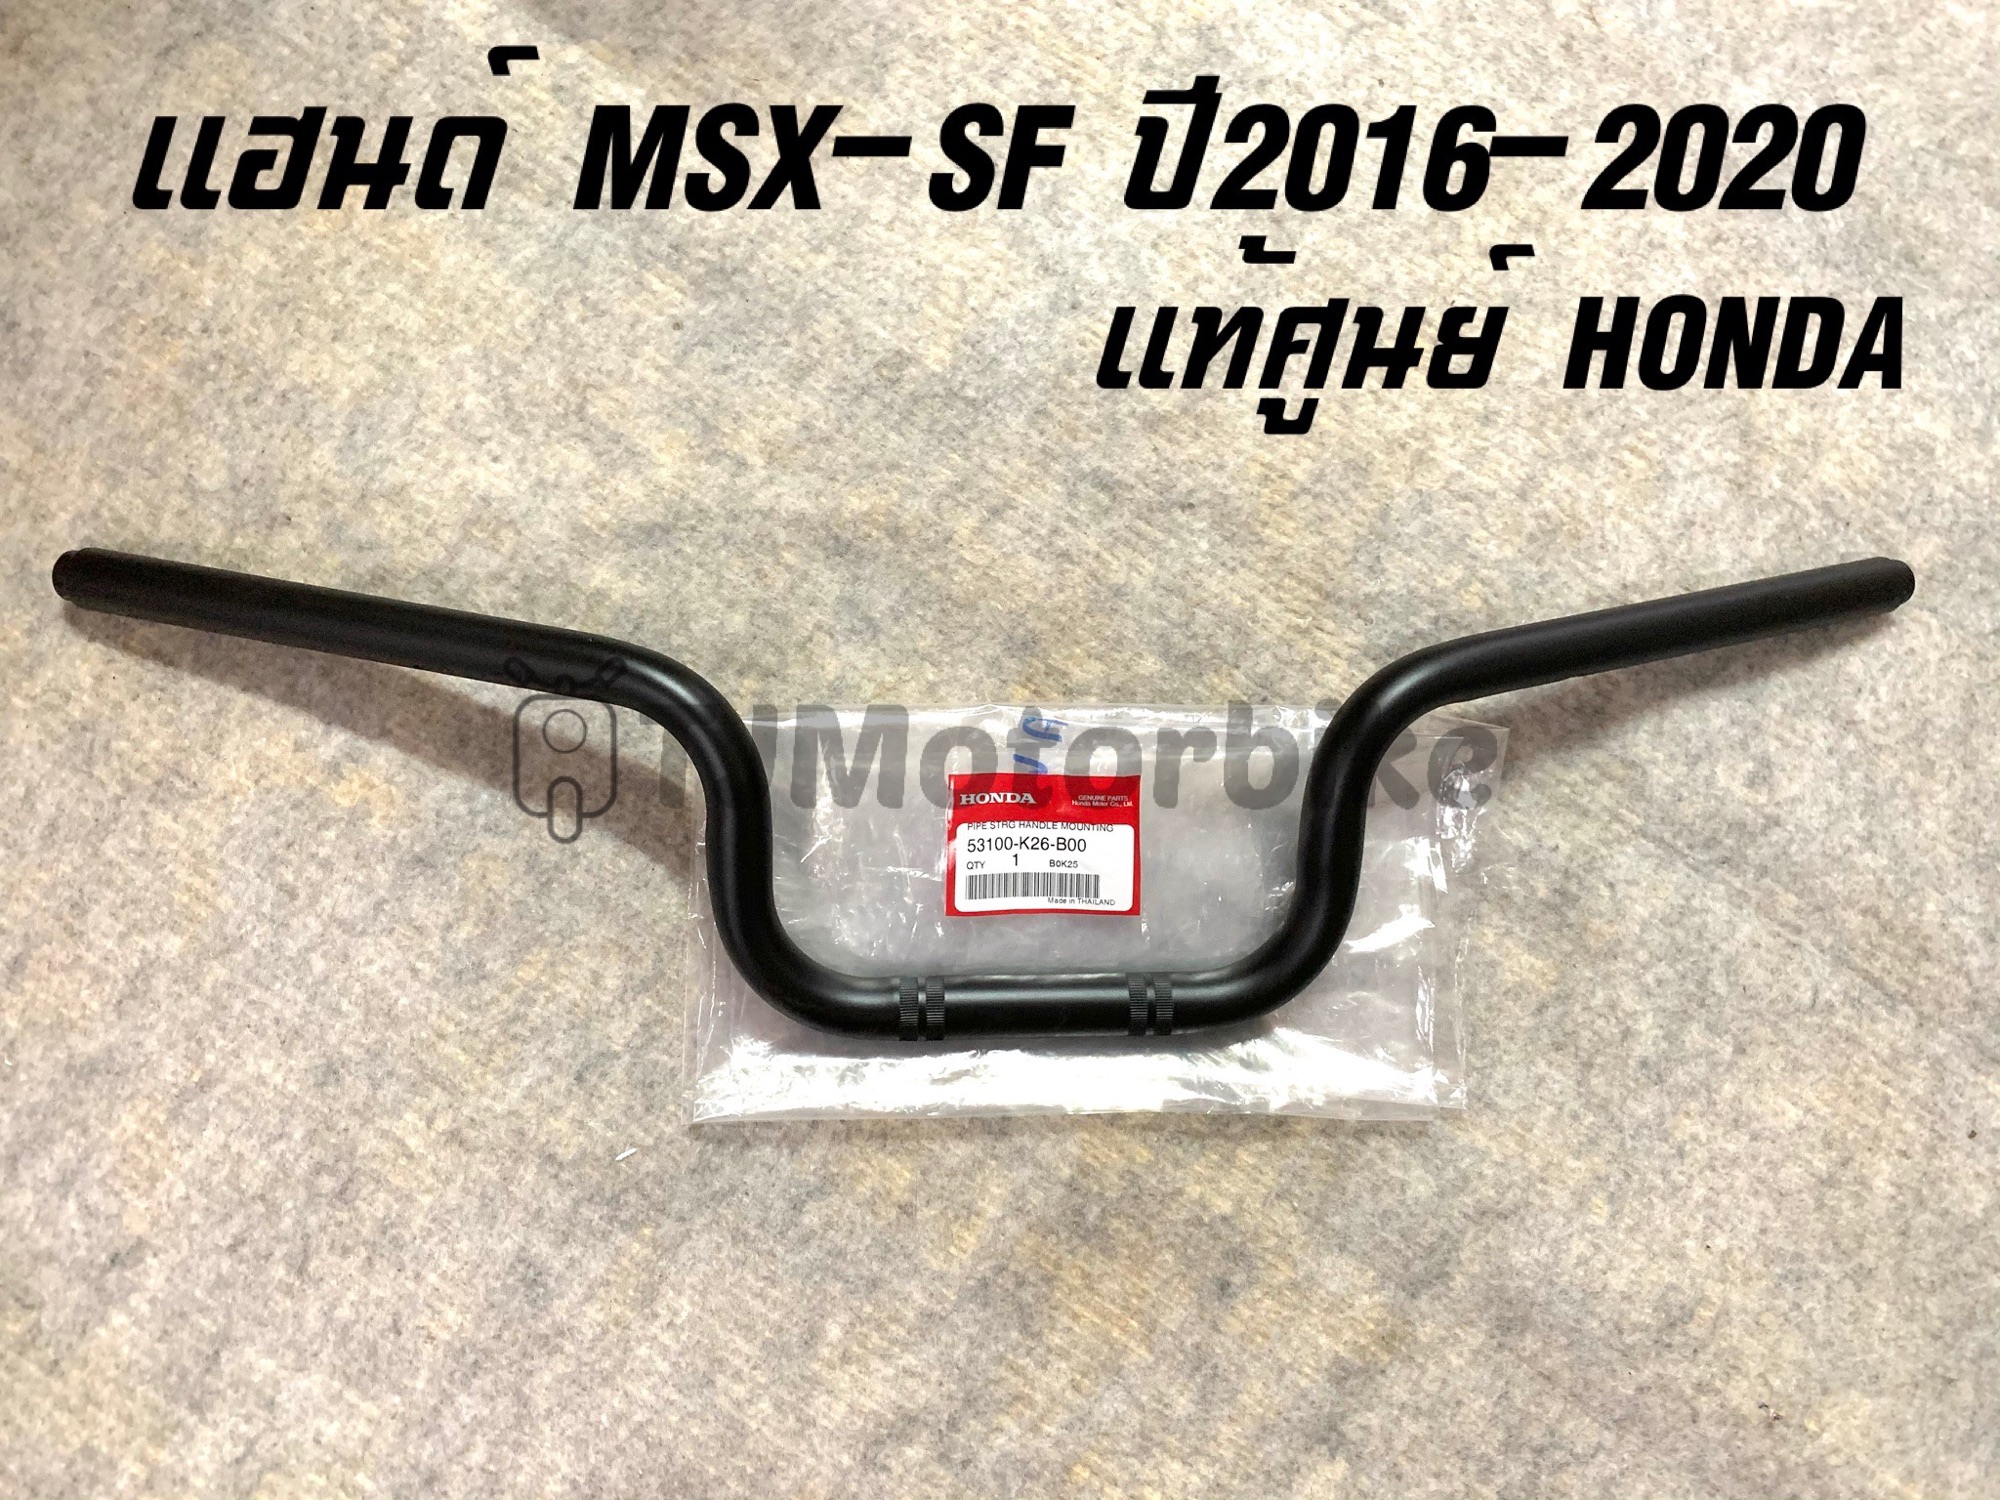 แท้ศูนย์ แฮนด์ MSX-SF (ปี 2016-2020) รุ่นใหม่ #แฮนด์บังคับเลี้ยว MSX-SF (53100-K26-B00)